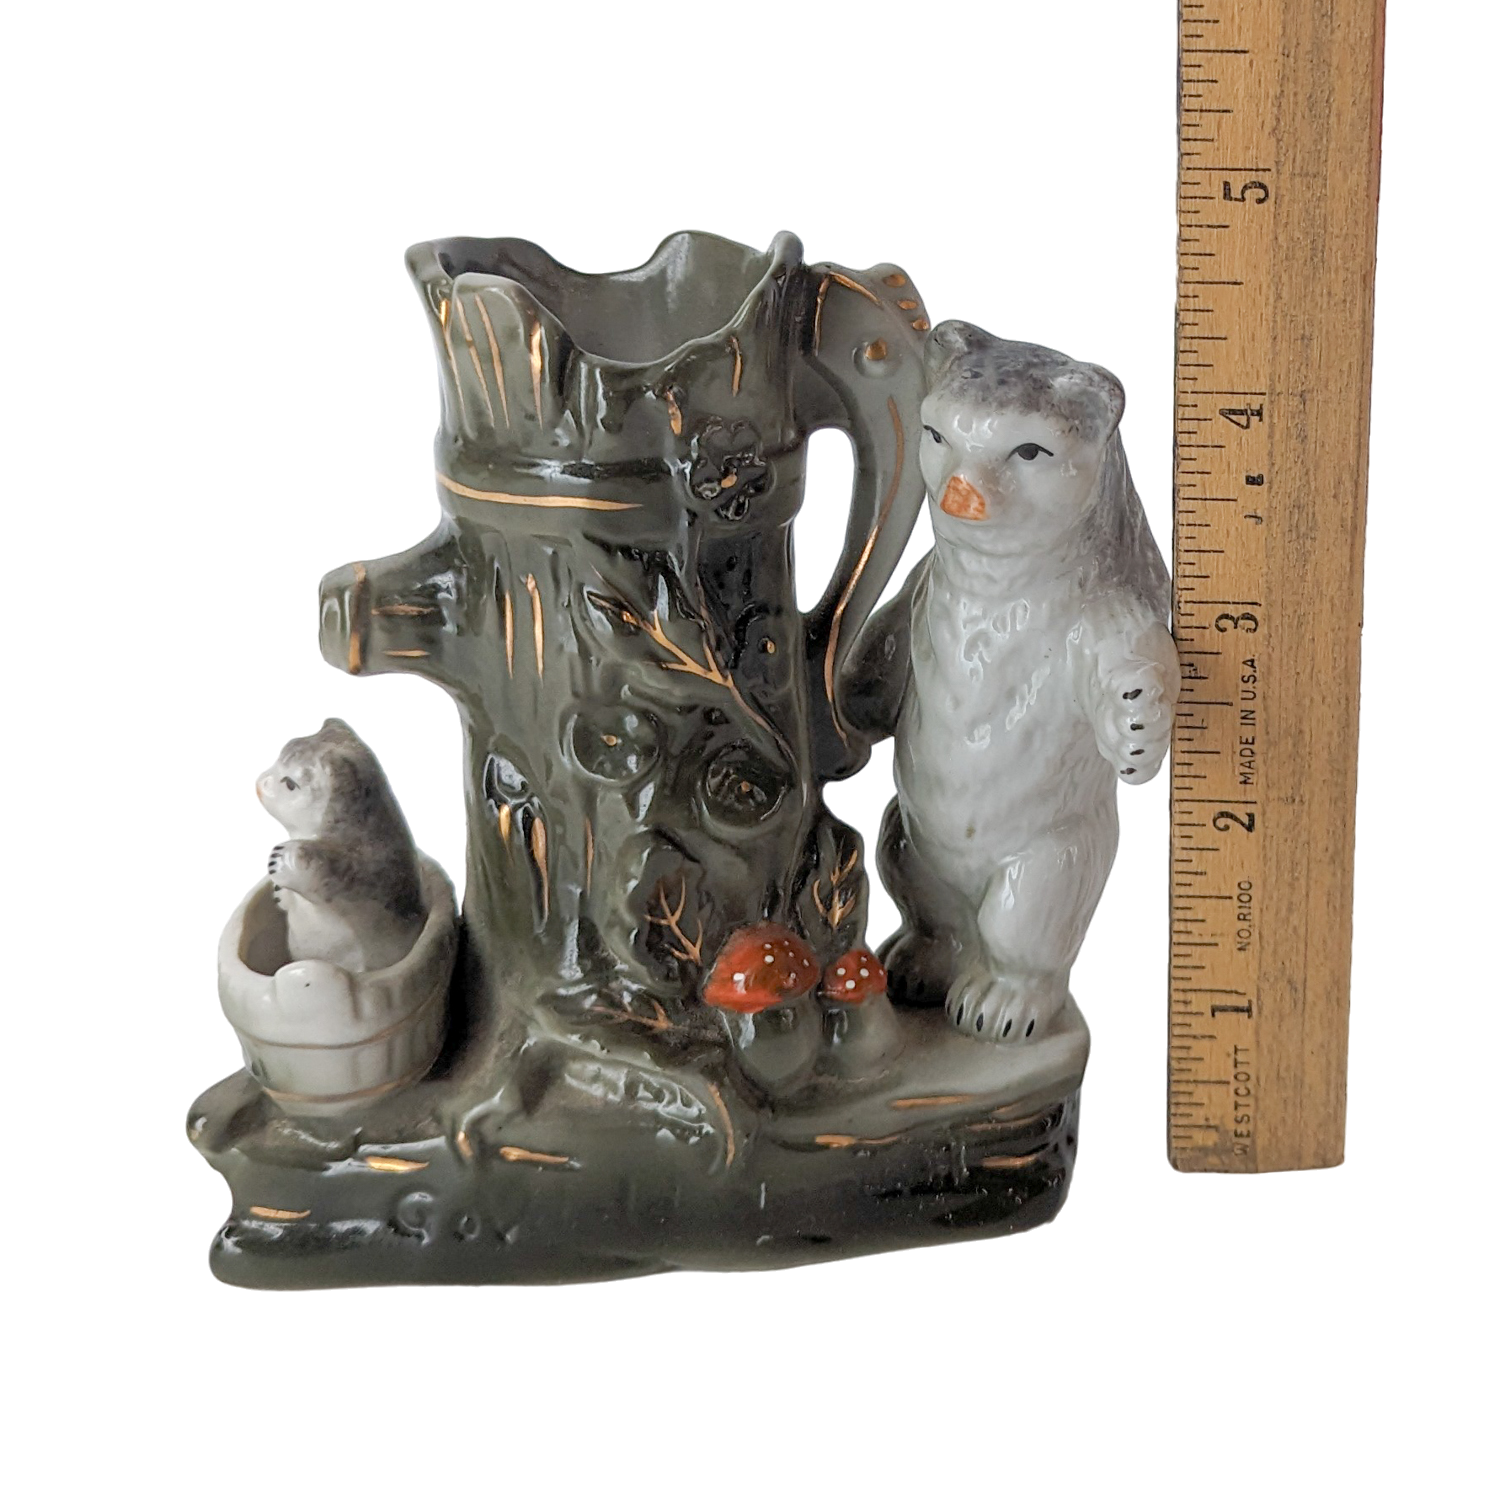 Antique German Porcelain Fairing Bears Spill Vase